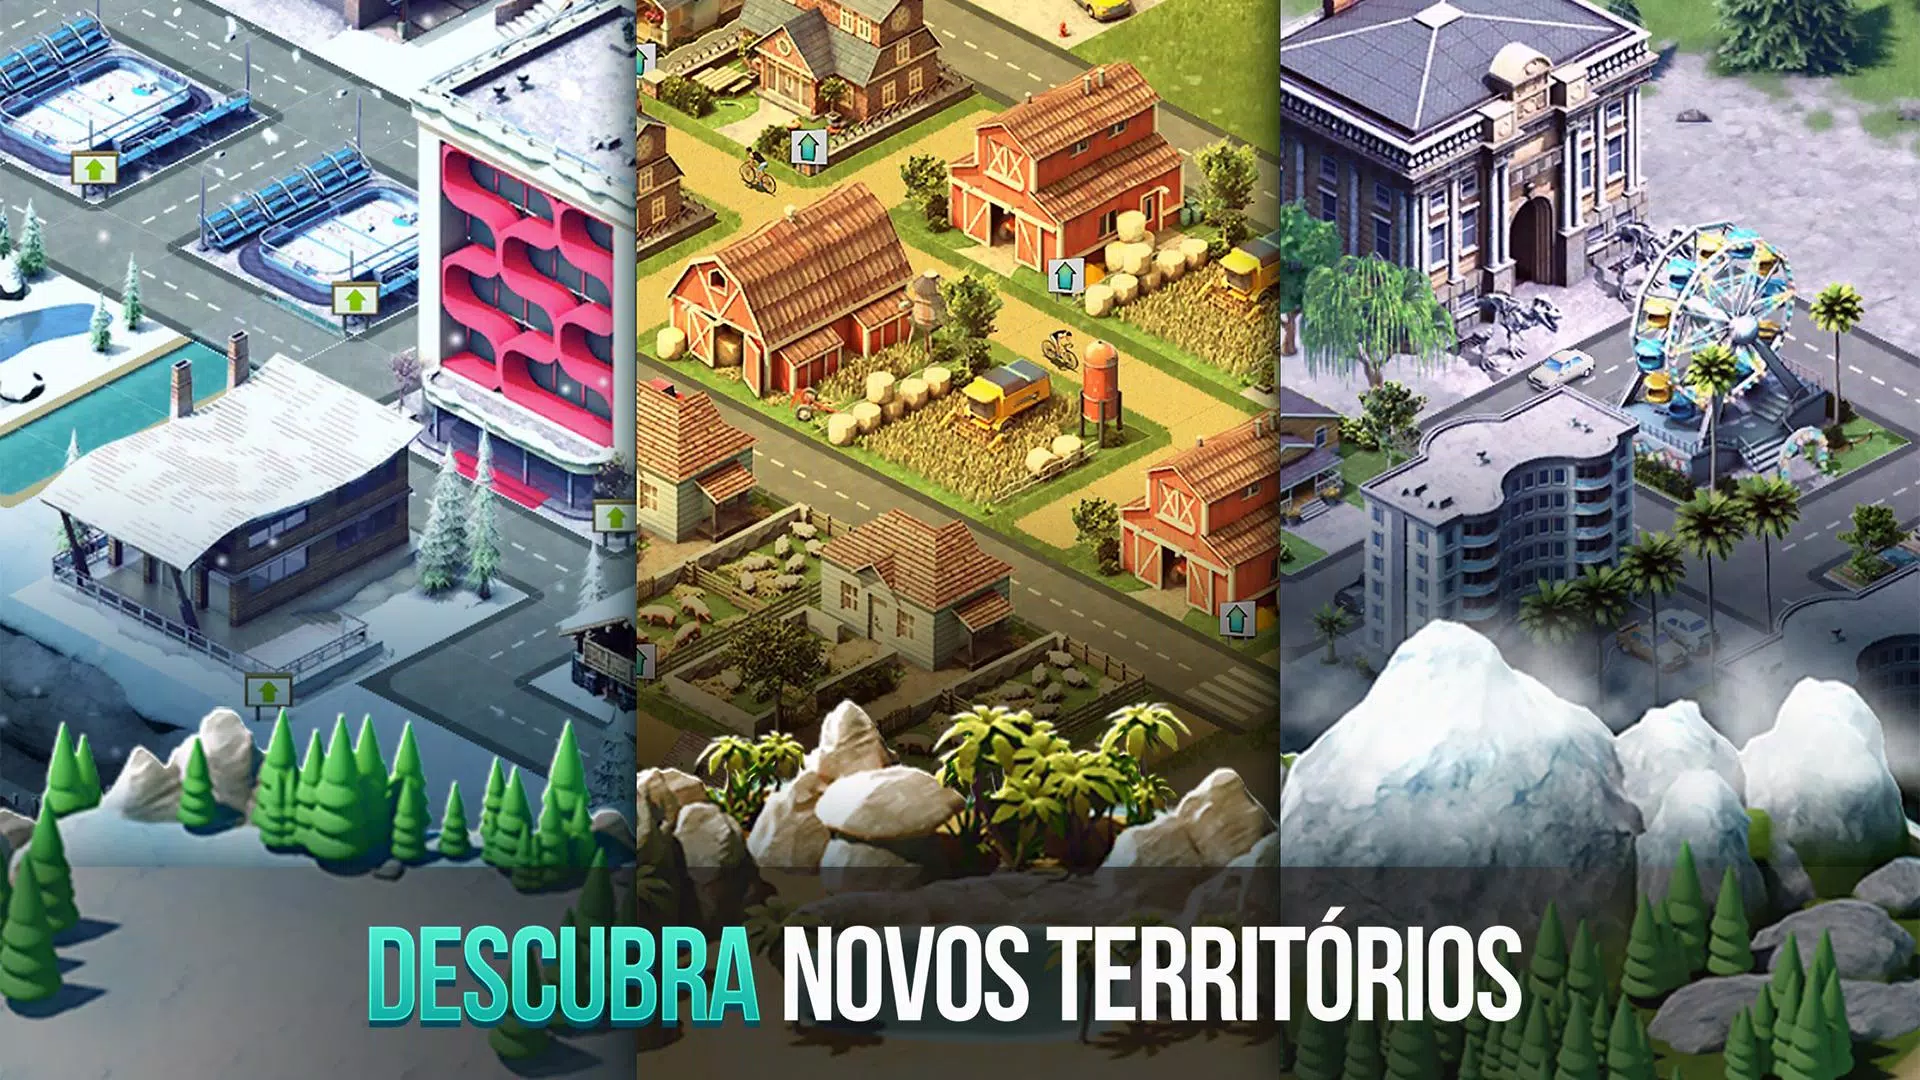 Jogo de Construir Cidade Para Celular A Vila: simulador de ilha 2 Village  Building Games Android ios 